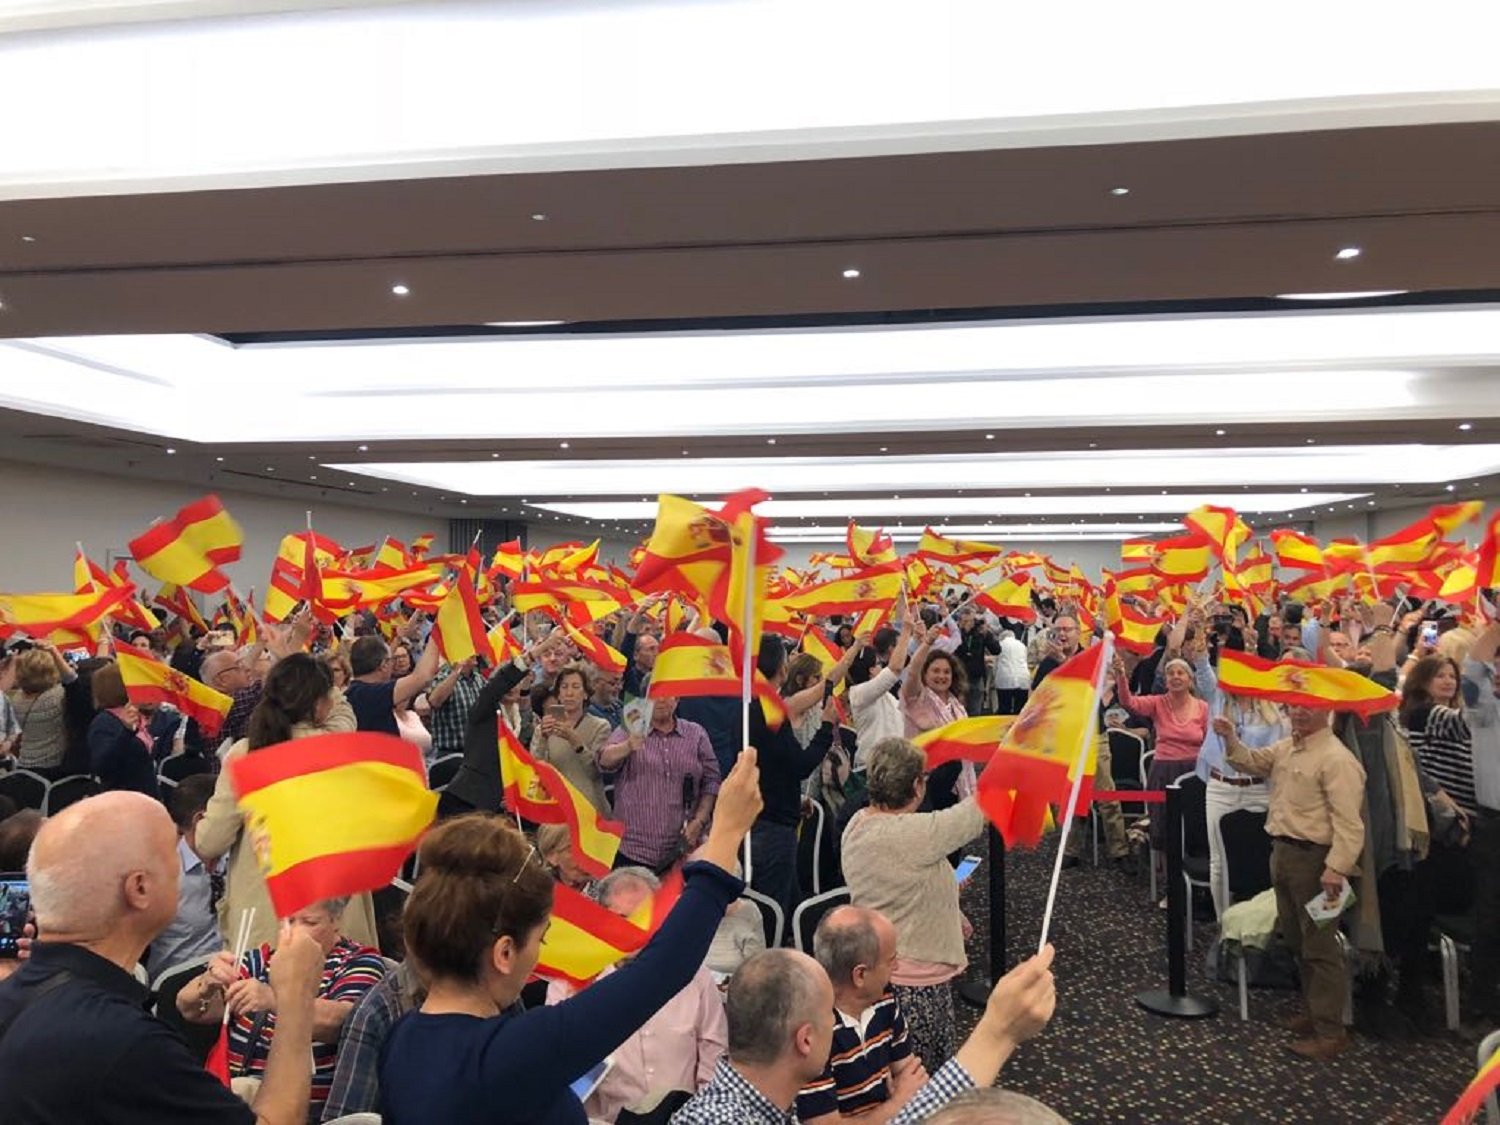 Els ultres de Vox desembarquen a Barcelona per disputar el vot unionista a Ciutadans